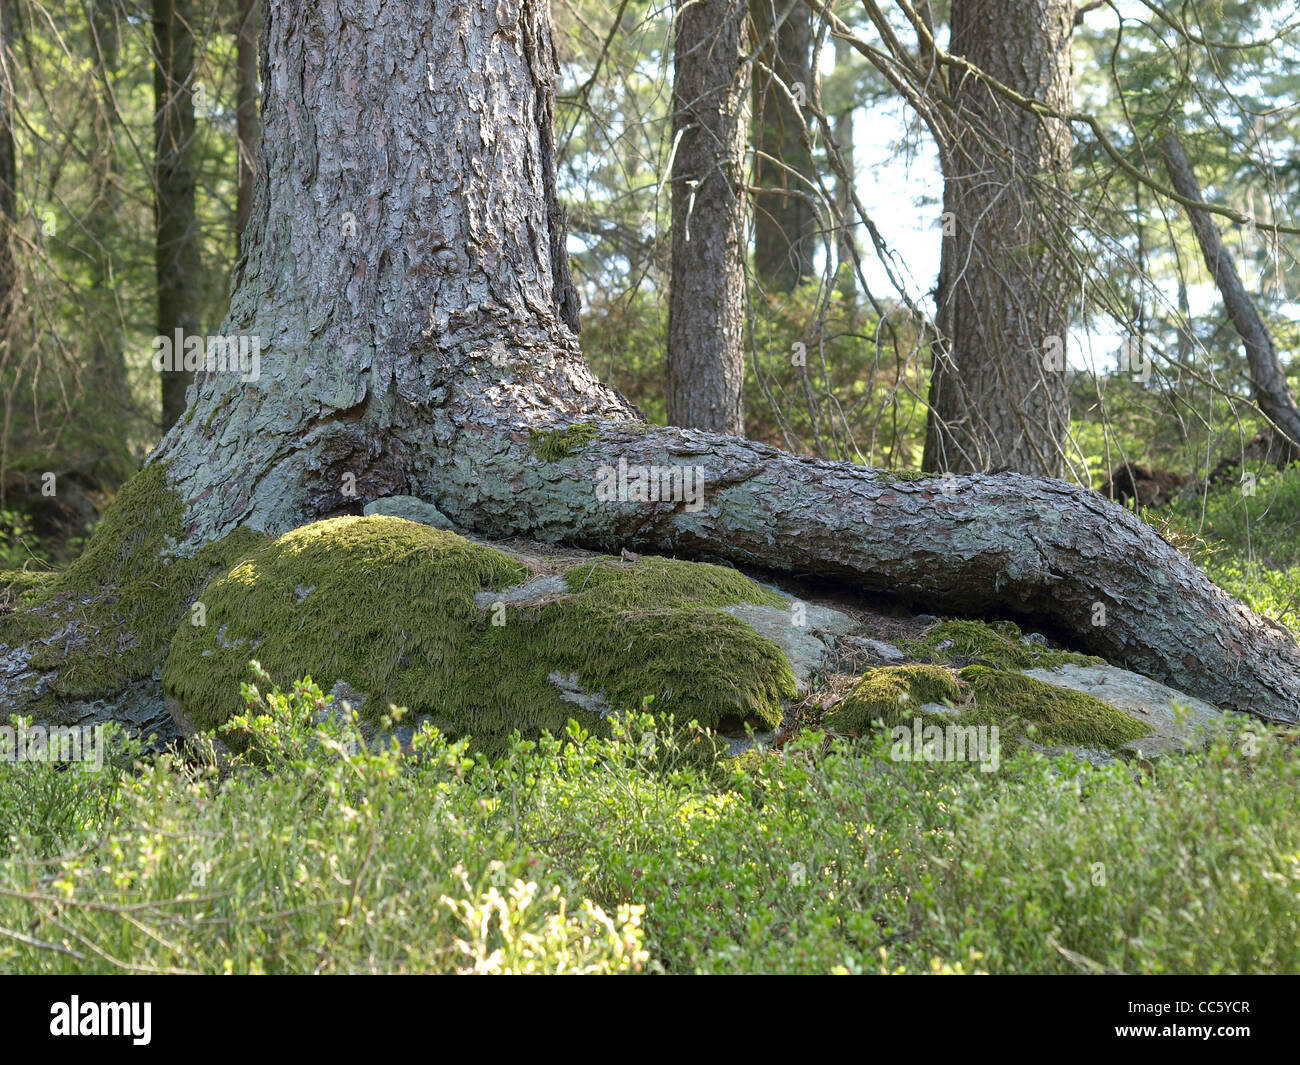 roots from a Norway Spruce on a rock / Picea abies / Wurzeln einer Gemeinen Fichte auf Felsen Stock Photo